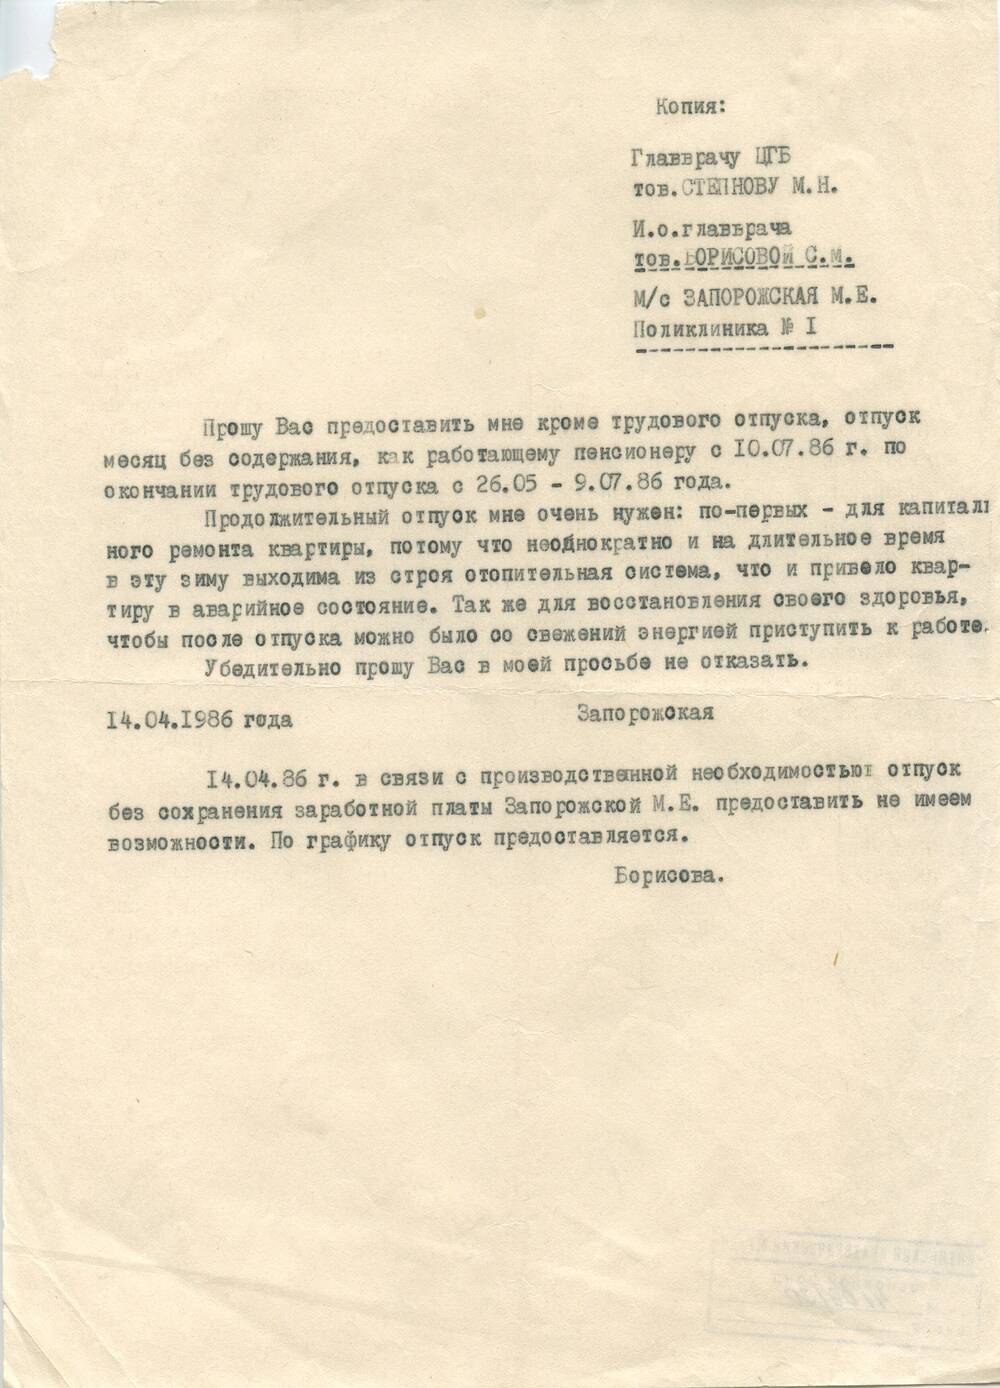 Документ Копия заявления медсестры Запорожской М.Е. о предоставлении отпуска за свой счет от 14.04.1986 г.